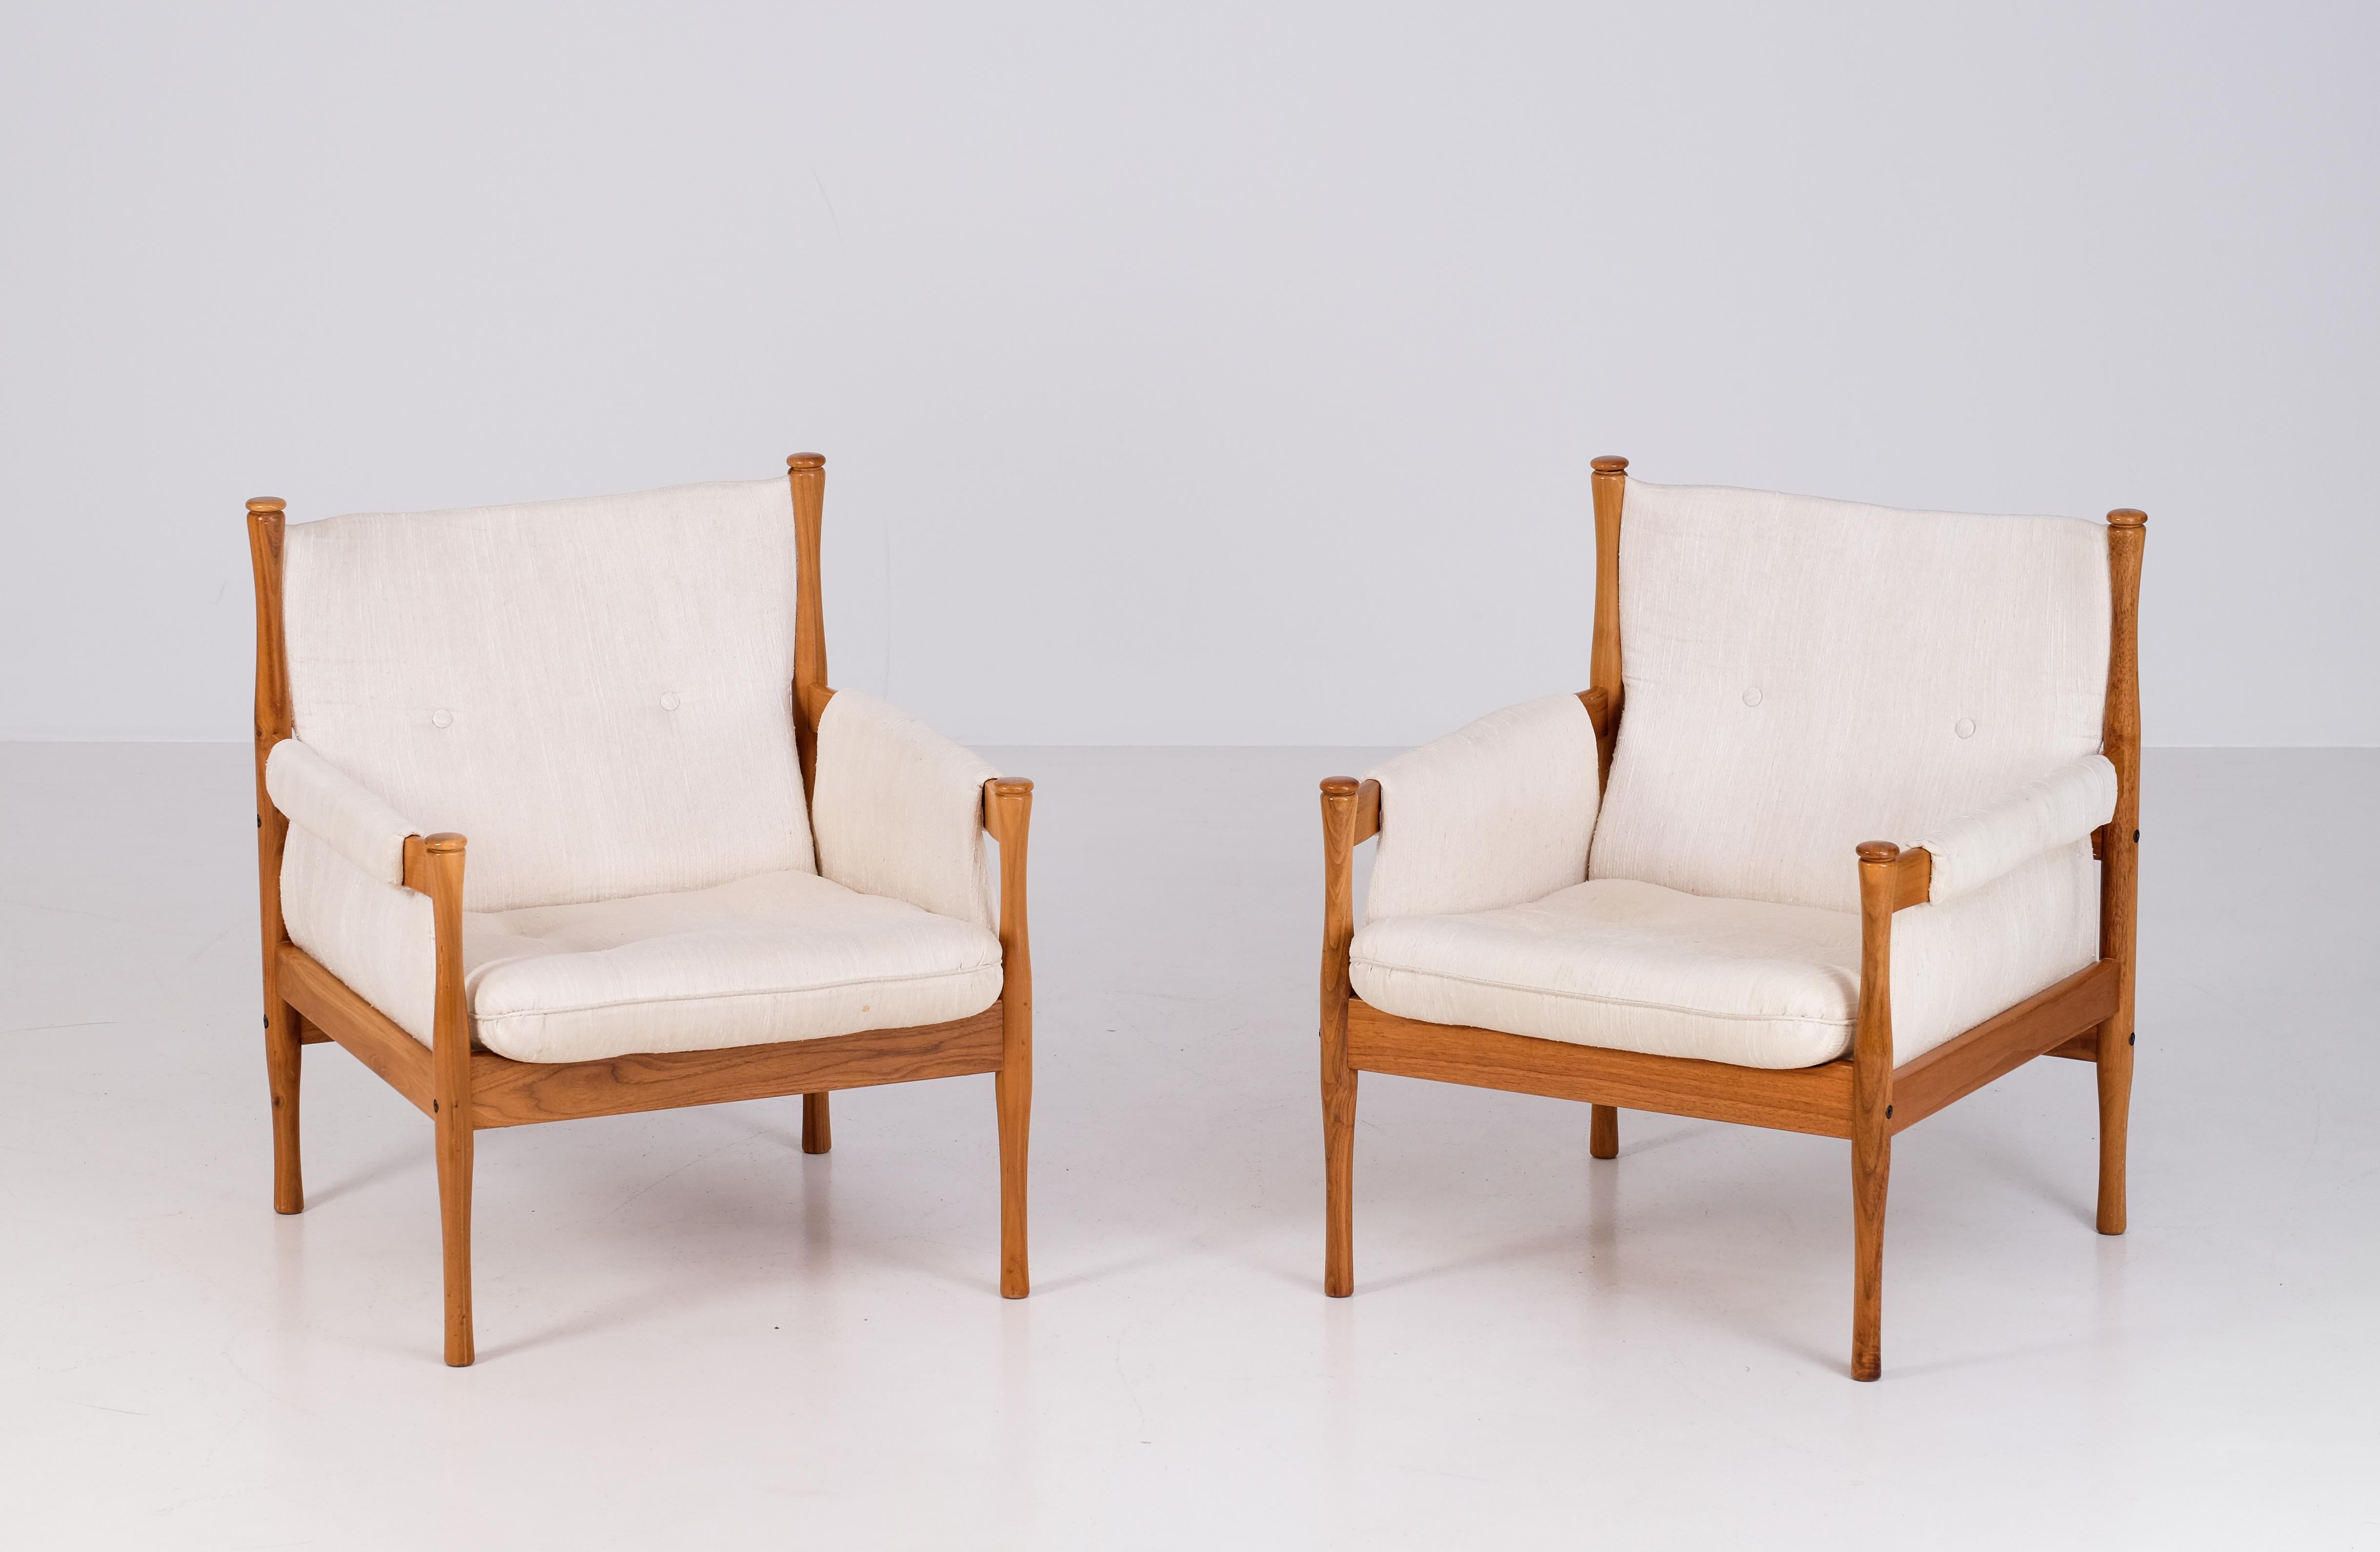 Schönes Paar schwedischer Sessel, hergestellt in Schweden in den 1960er Jahren. 
Buchenholz und Stoff.